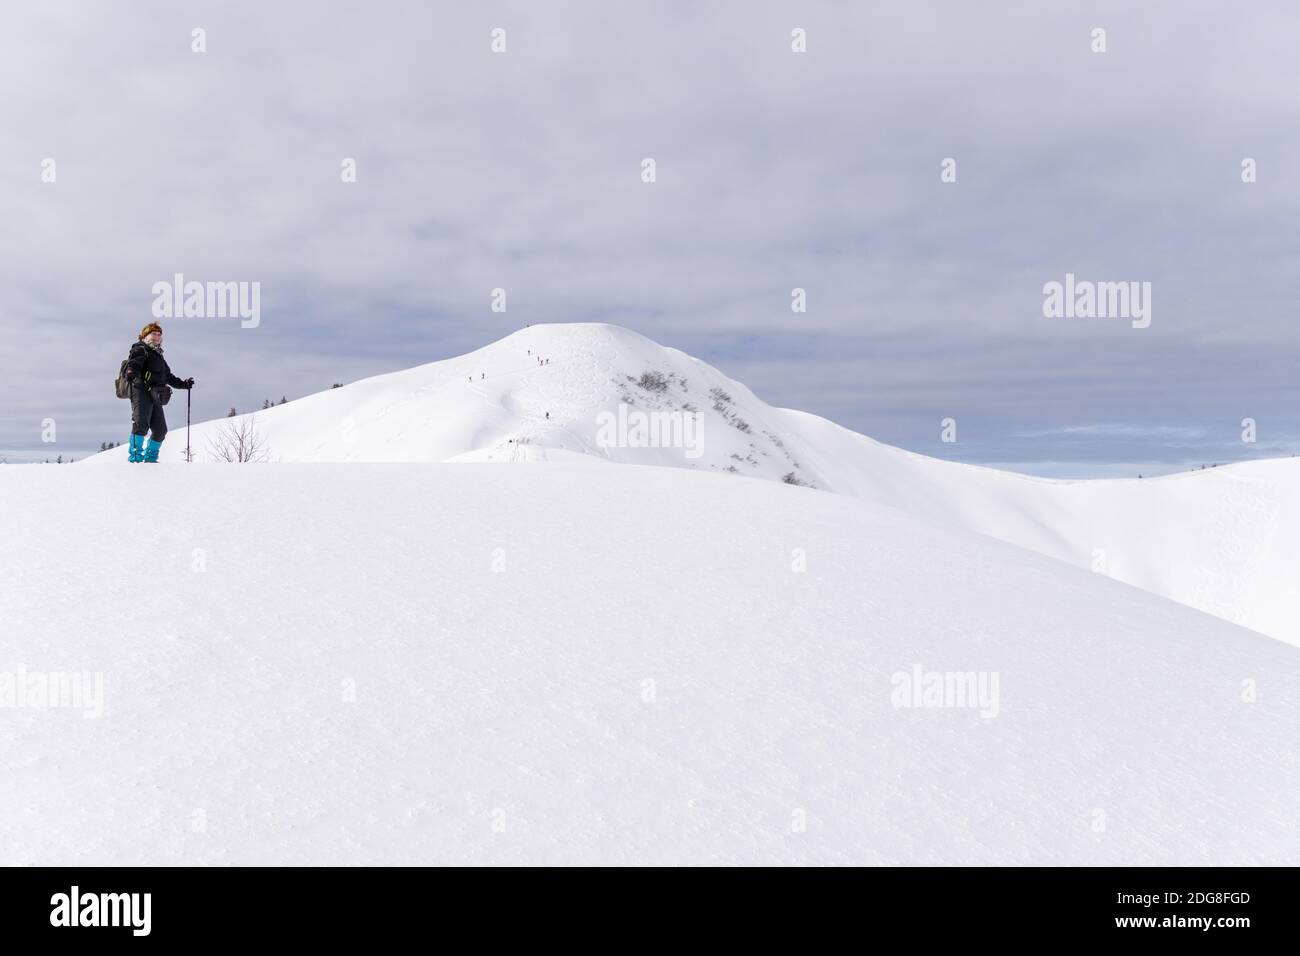 Ältere Frau ist Schneeschuhwandern in alpinen Schnee Winter Berge. Allgau, Bayern, Deutschland. Stockfoto